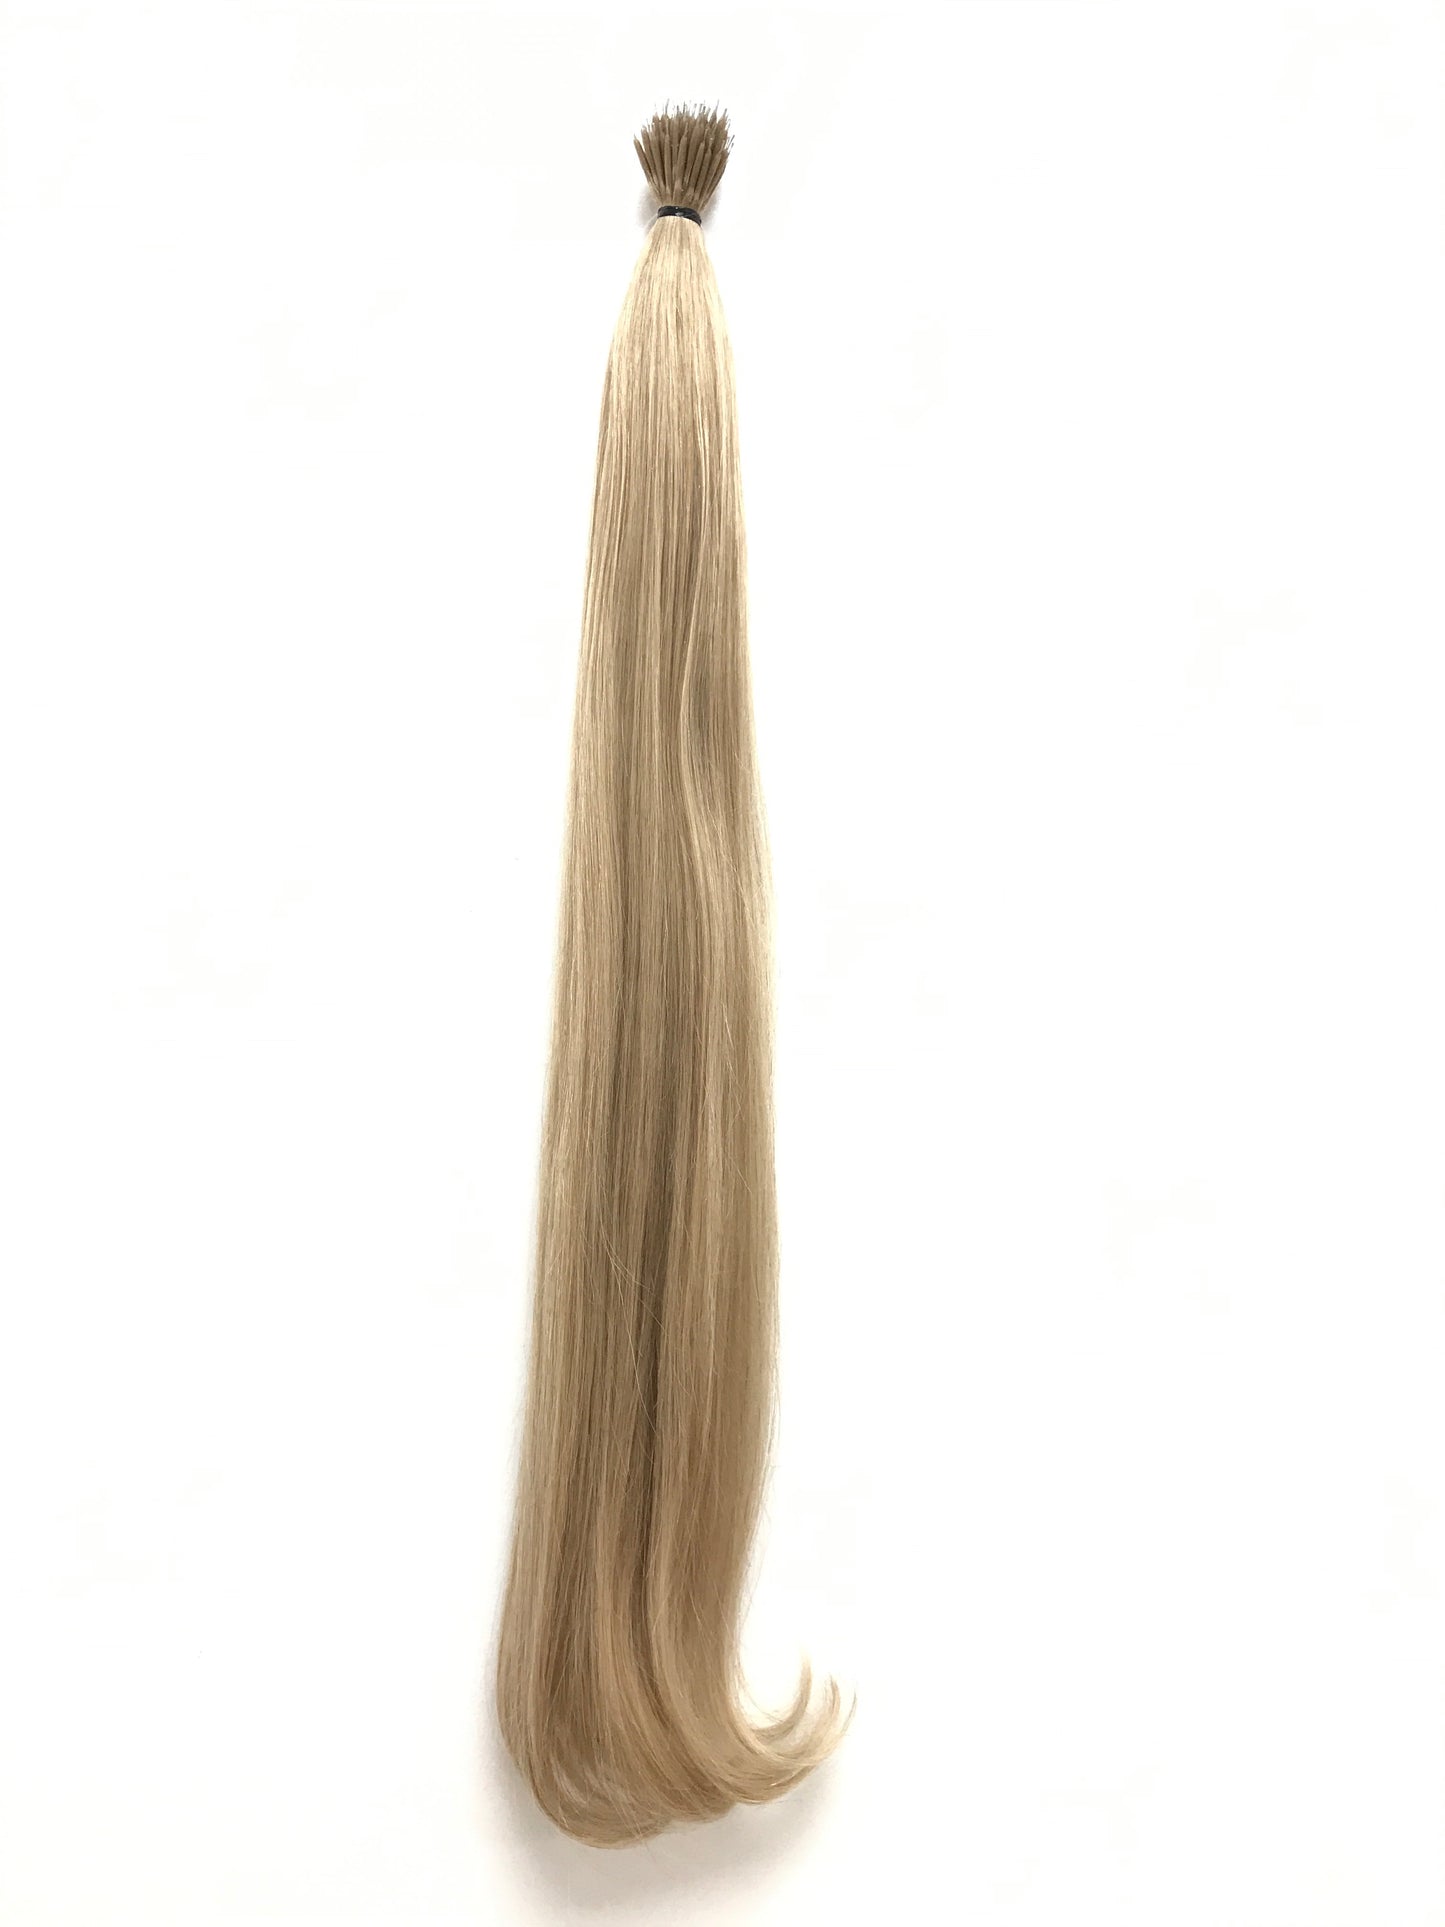 שיער אנושי של רמי בתולה רוסית, שיער קצה ננו, חלק, 24'', משלוח מהיר!